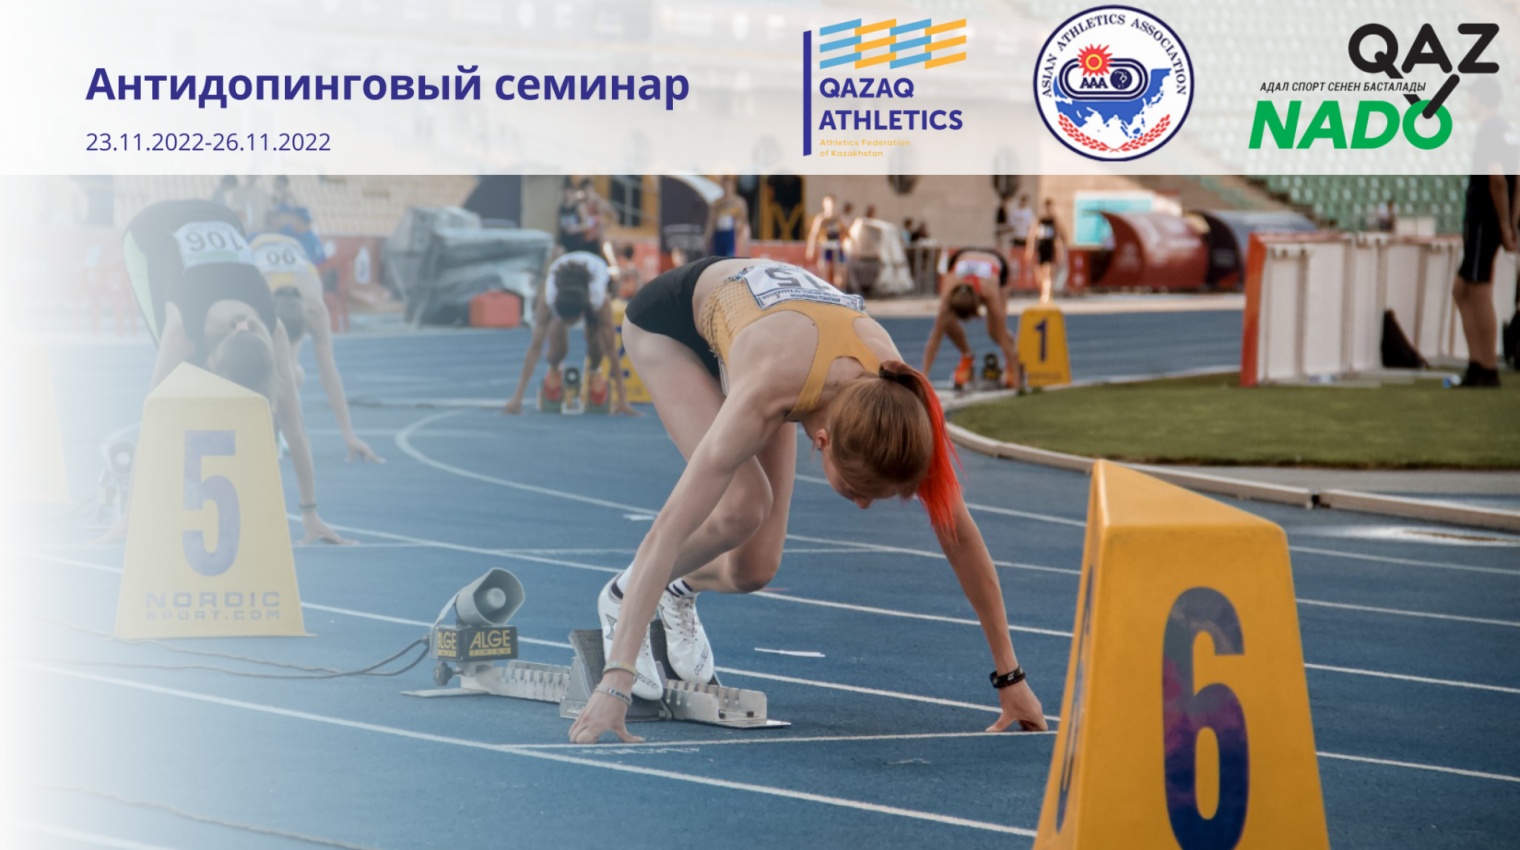 Федерация легкой атлетики Республики Казахстан проводит антидопинговый курс онлайн семинаров (через ZOOM).